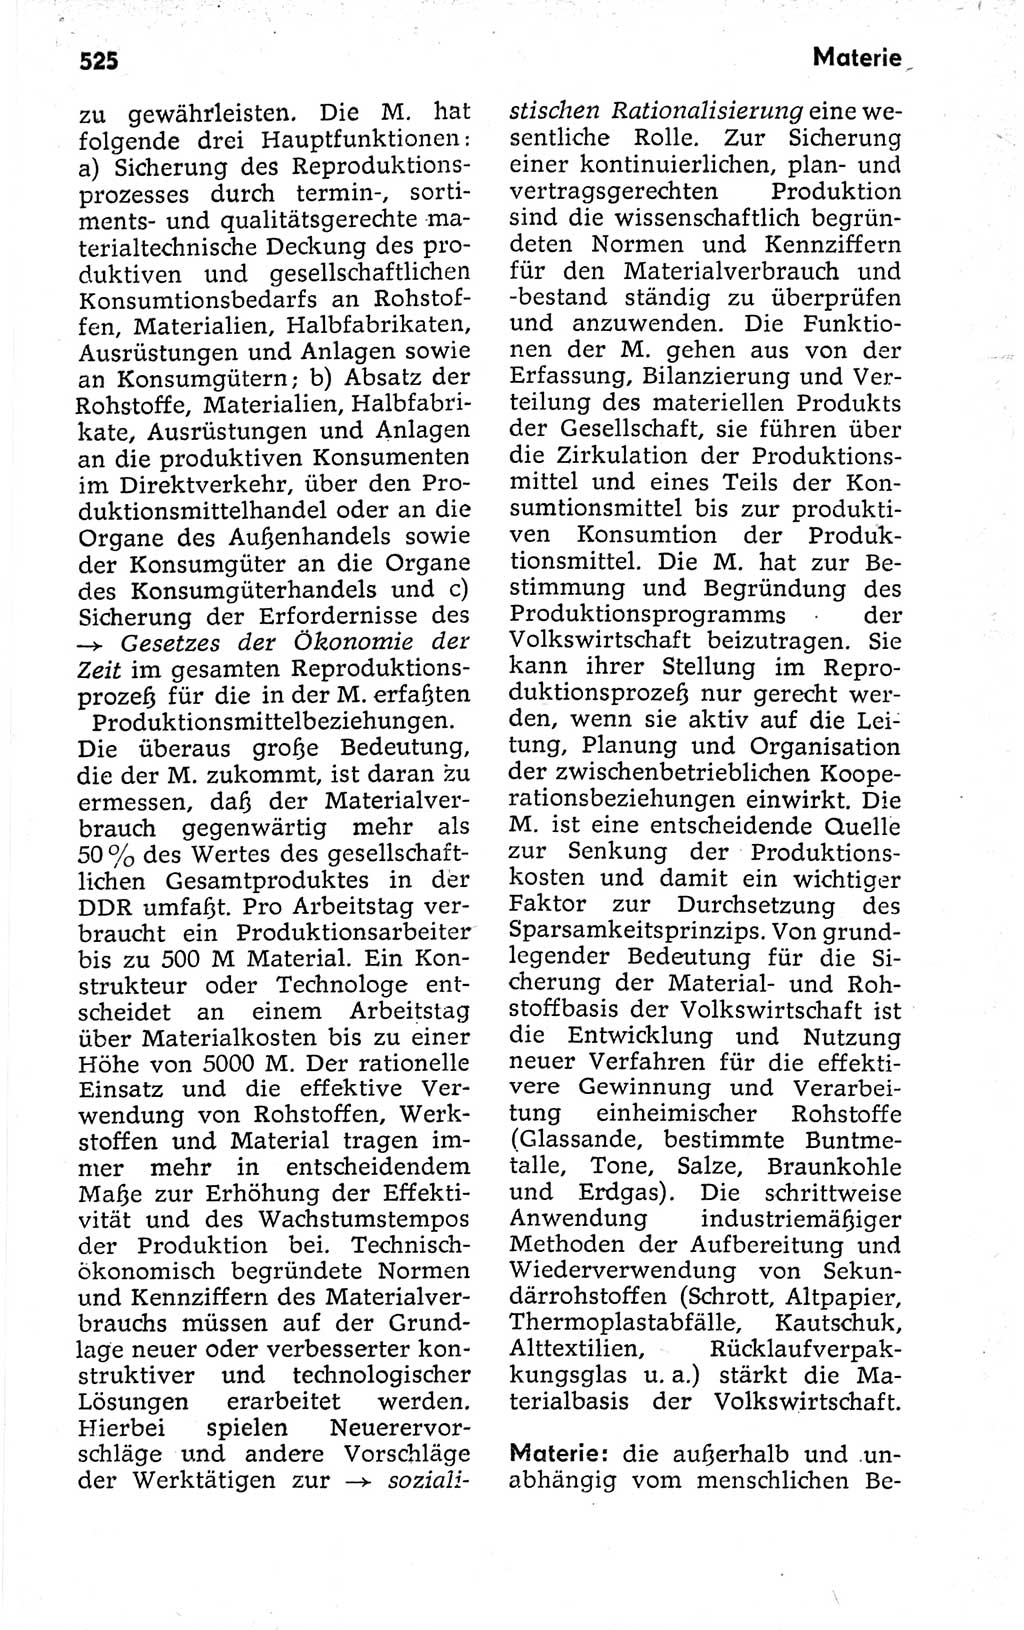 Kleines politisches Wörterbuch [Deutsche Demokratische Republik (DDR)] 1973, Seite 525 (Kl. pol. Wb. DDR 1973, S. 525)